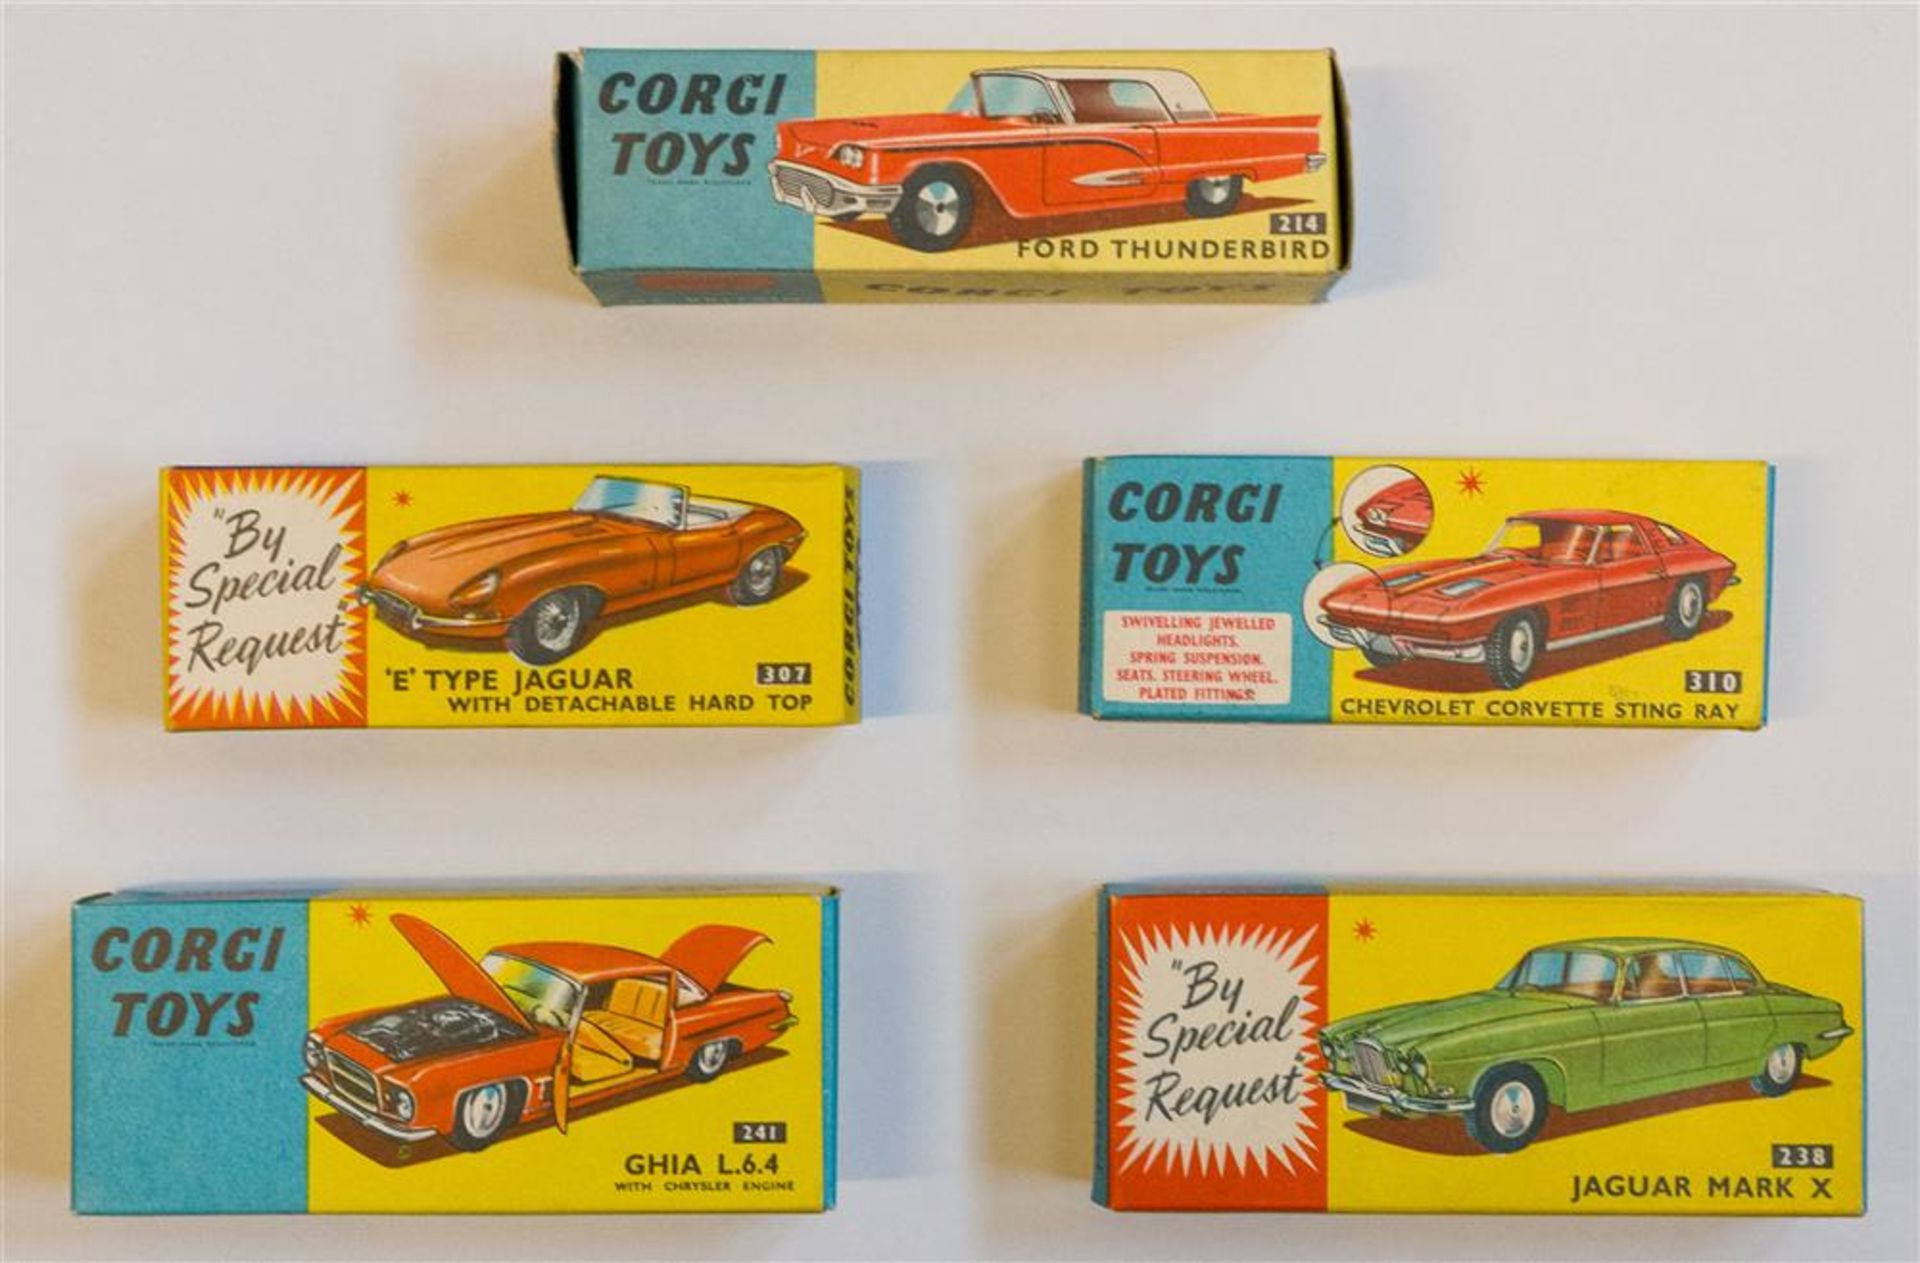 [Model cars] Corgi Toys. (1) 'E' Type Jaguar with Detachable Hard Top - Bild 2 aus 5